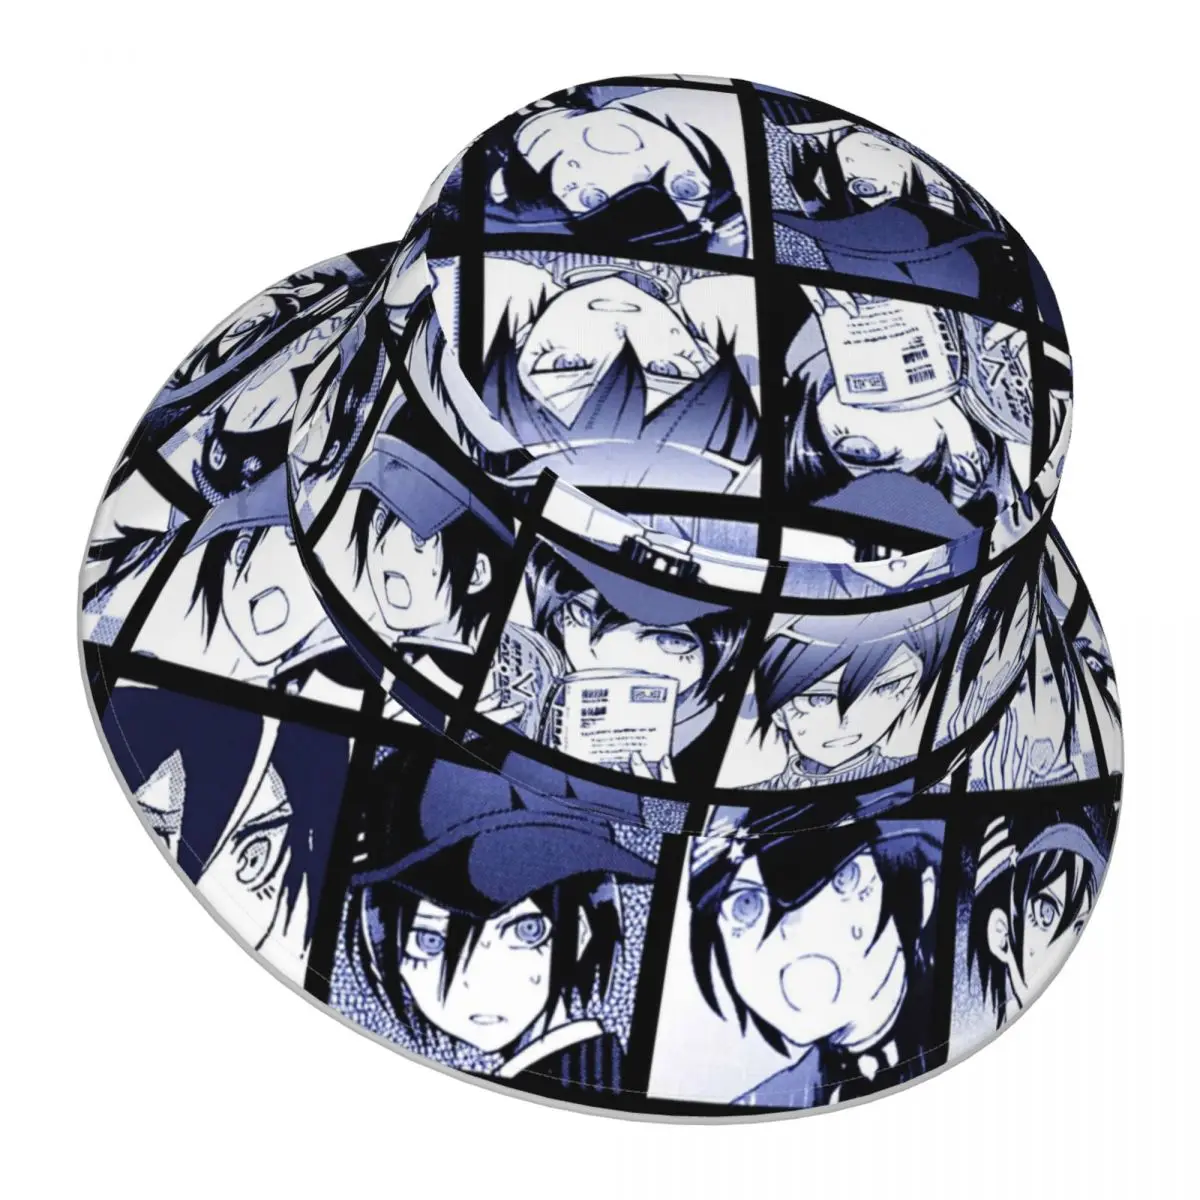 Danganronpa,Shuichi Manga Collection reflective Bucket Hat Men Women Bucket Hat Outdoor Sunscreen Beach Hat Fishing Cap